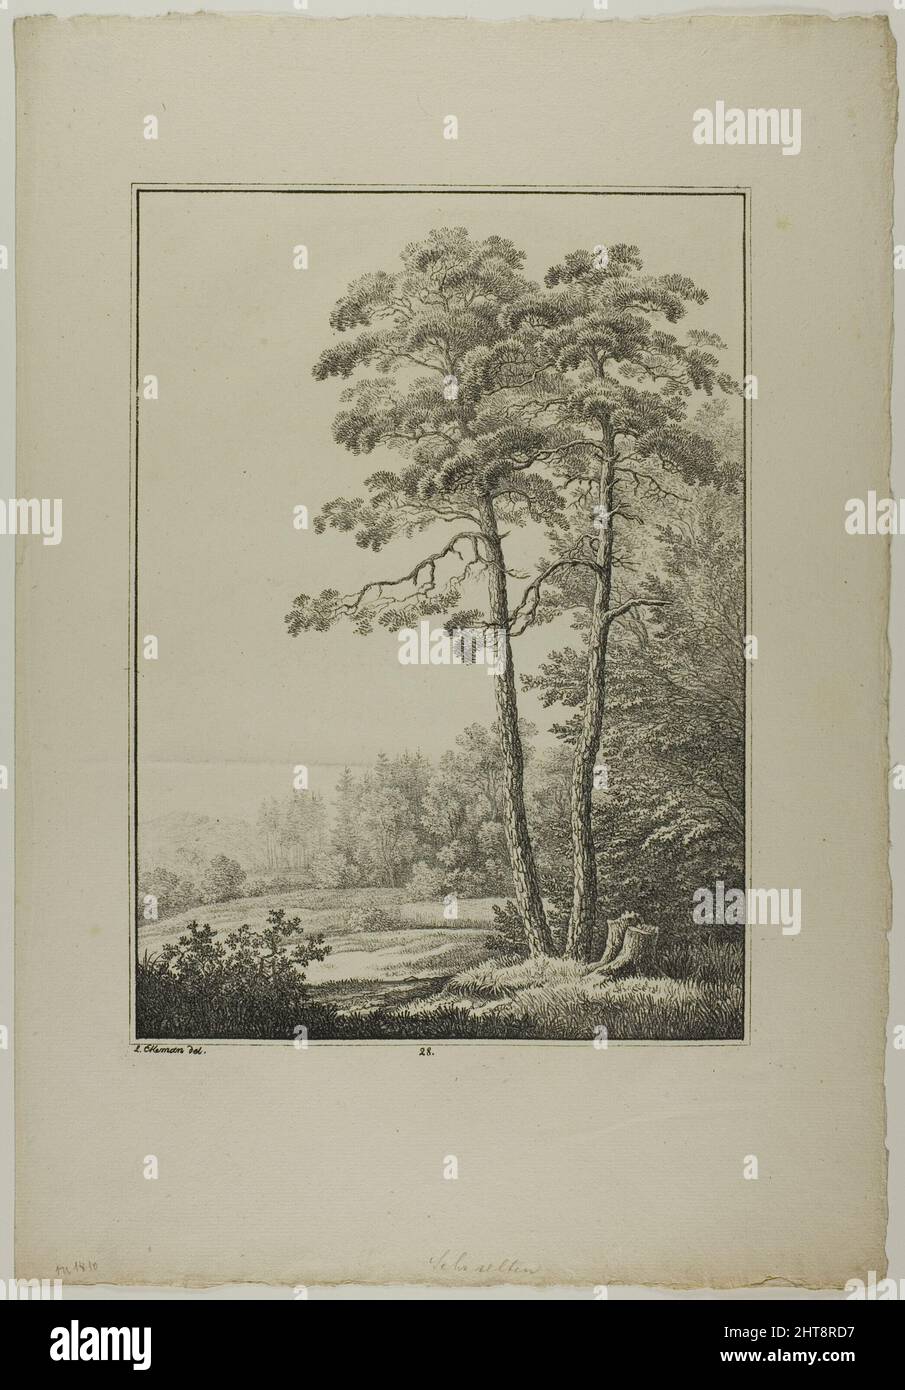 Plate 28 from Blatt Baum und Landschafts Studien, c.1810. Stock Photo